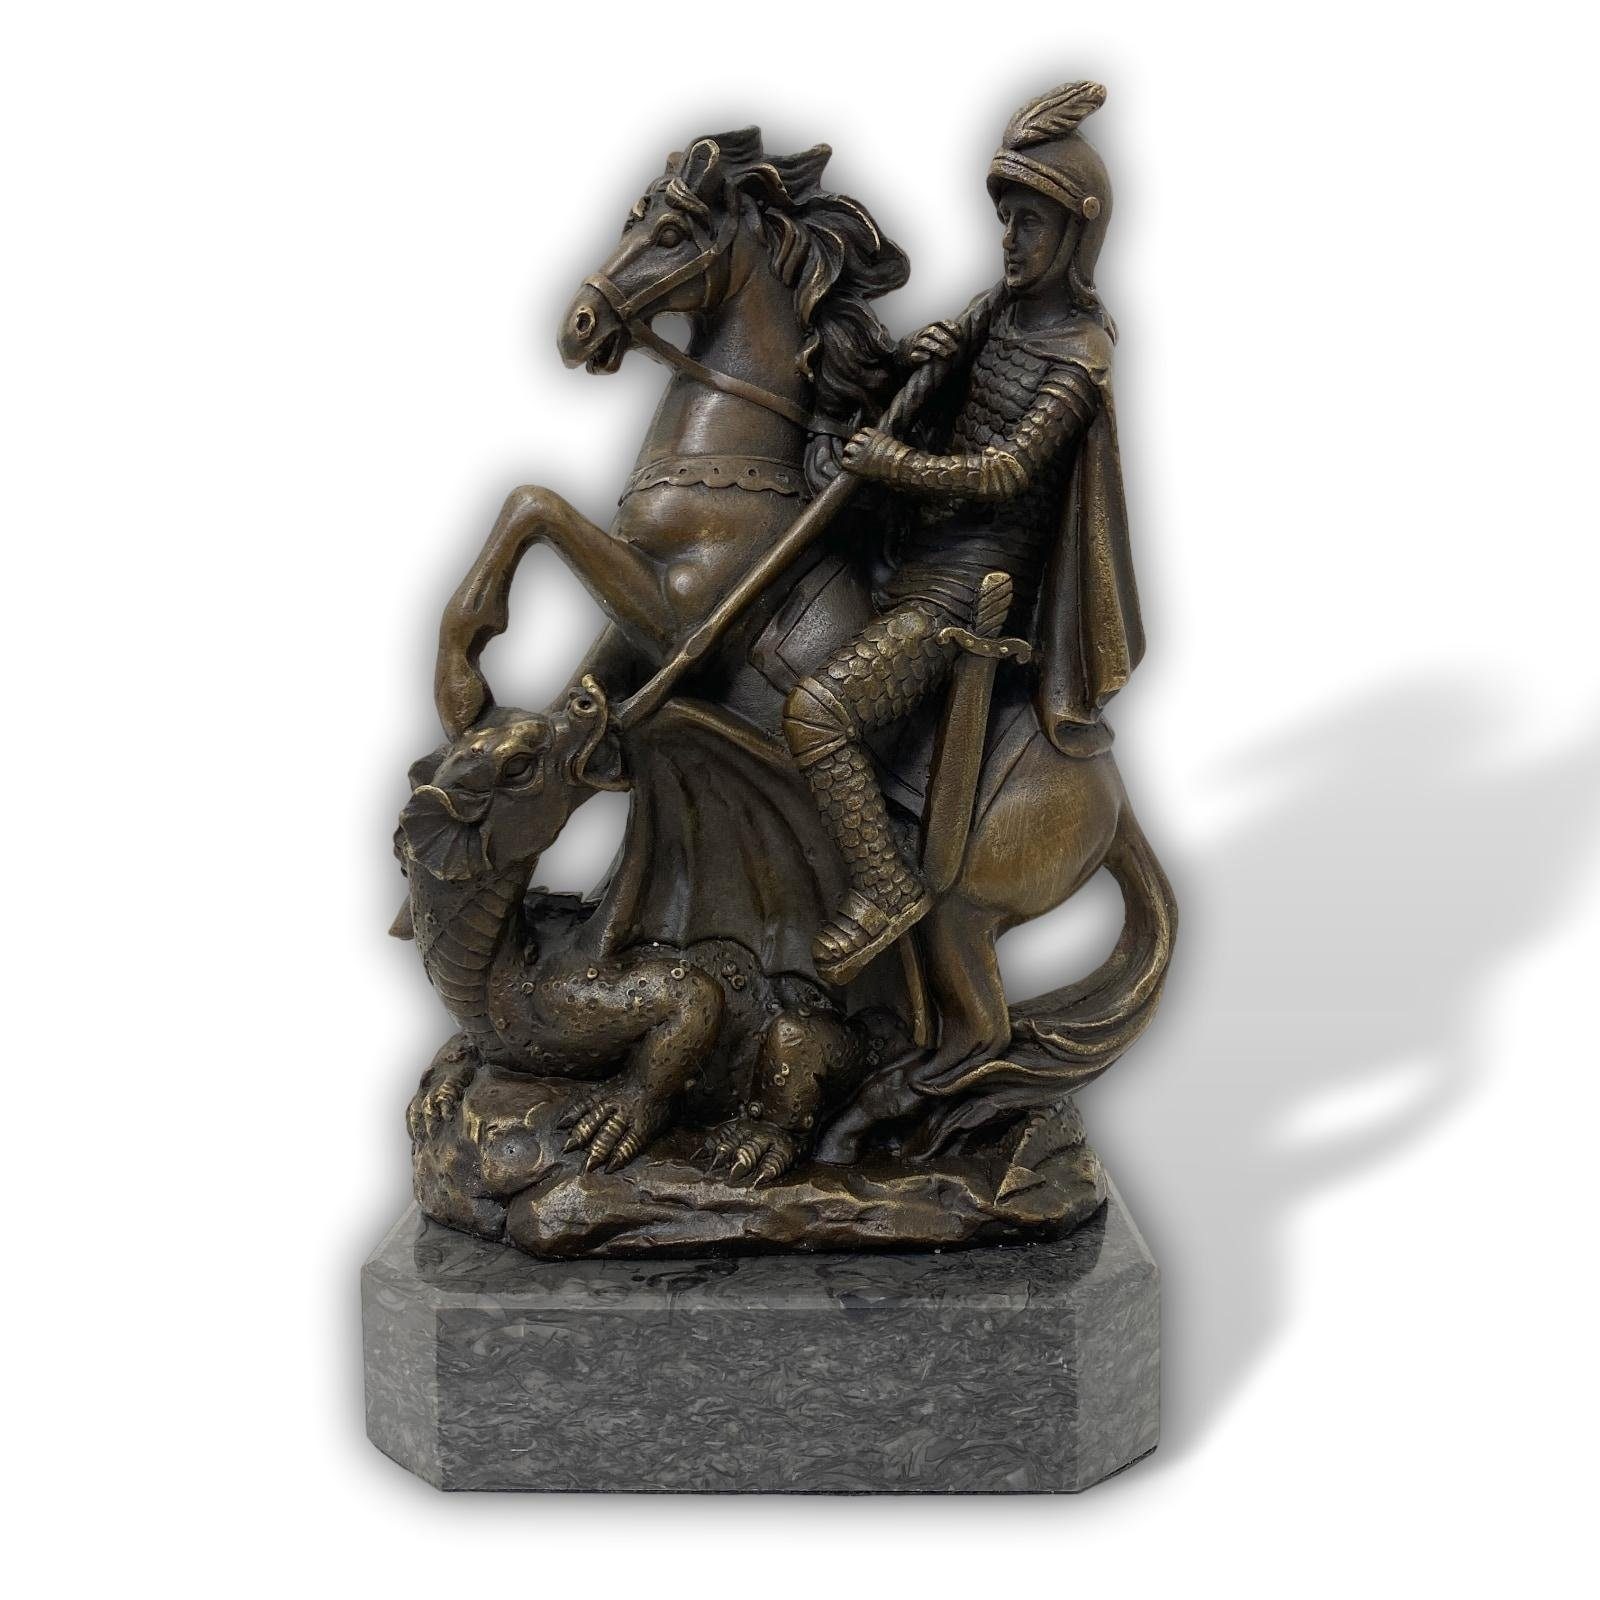 Aubaho Skulptur Skulptur Bronze Figur St.Georg Drachentöter Mythologie Antik-Stil Bron